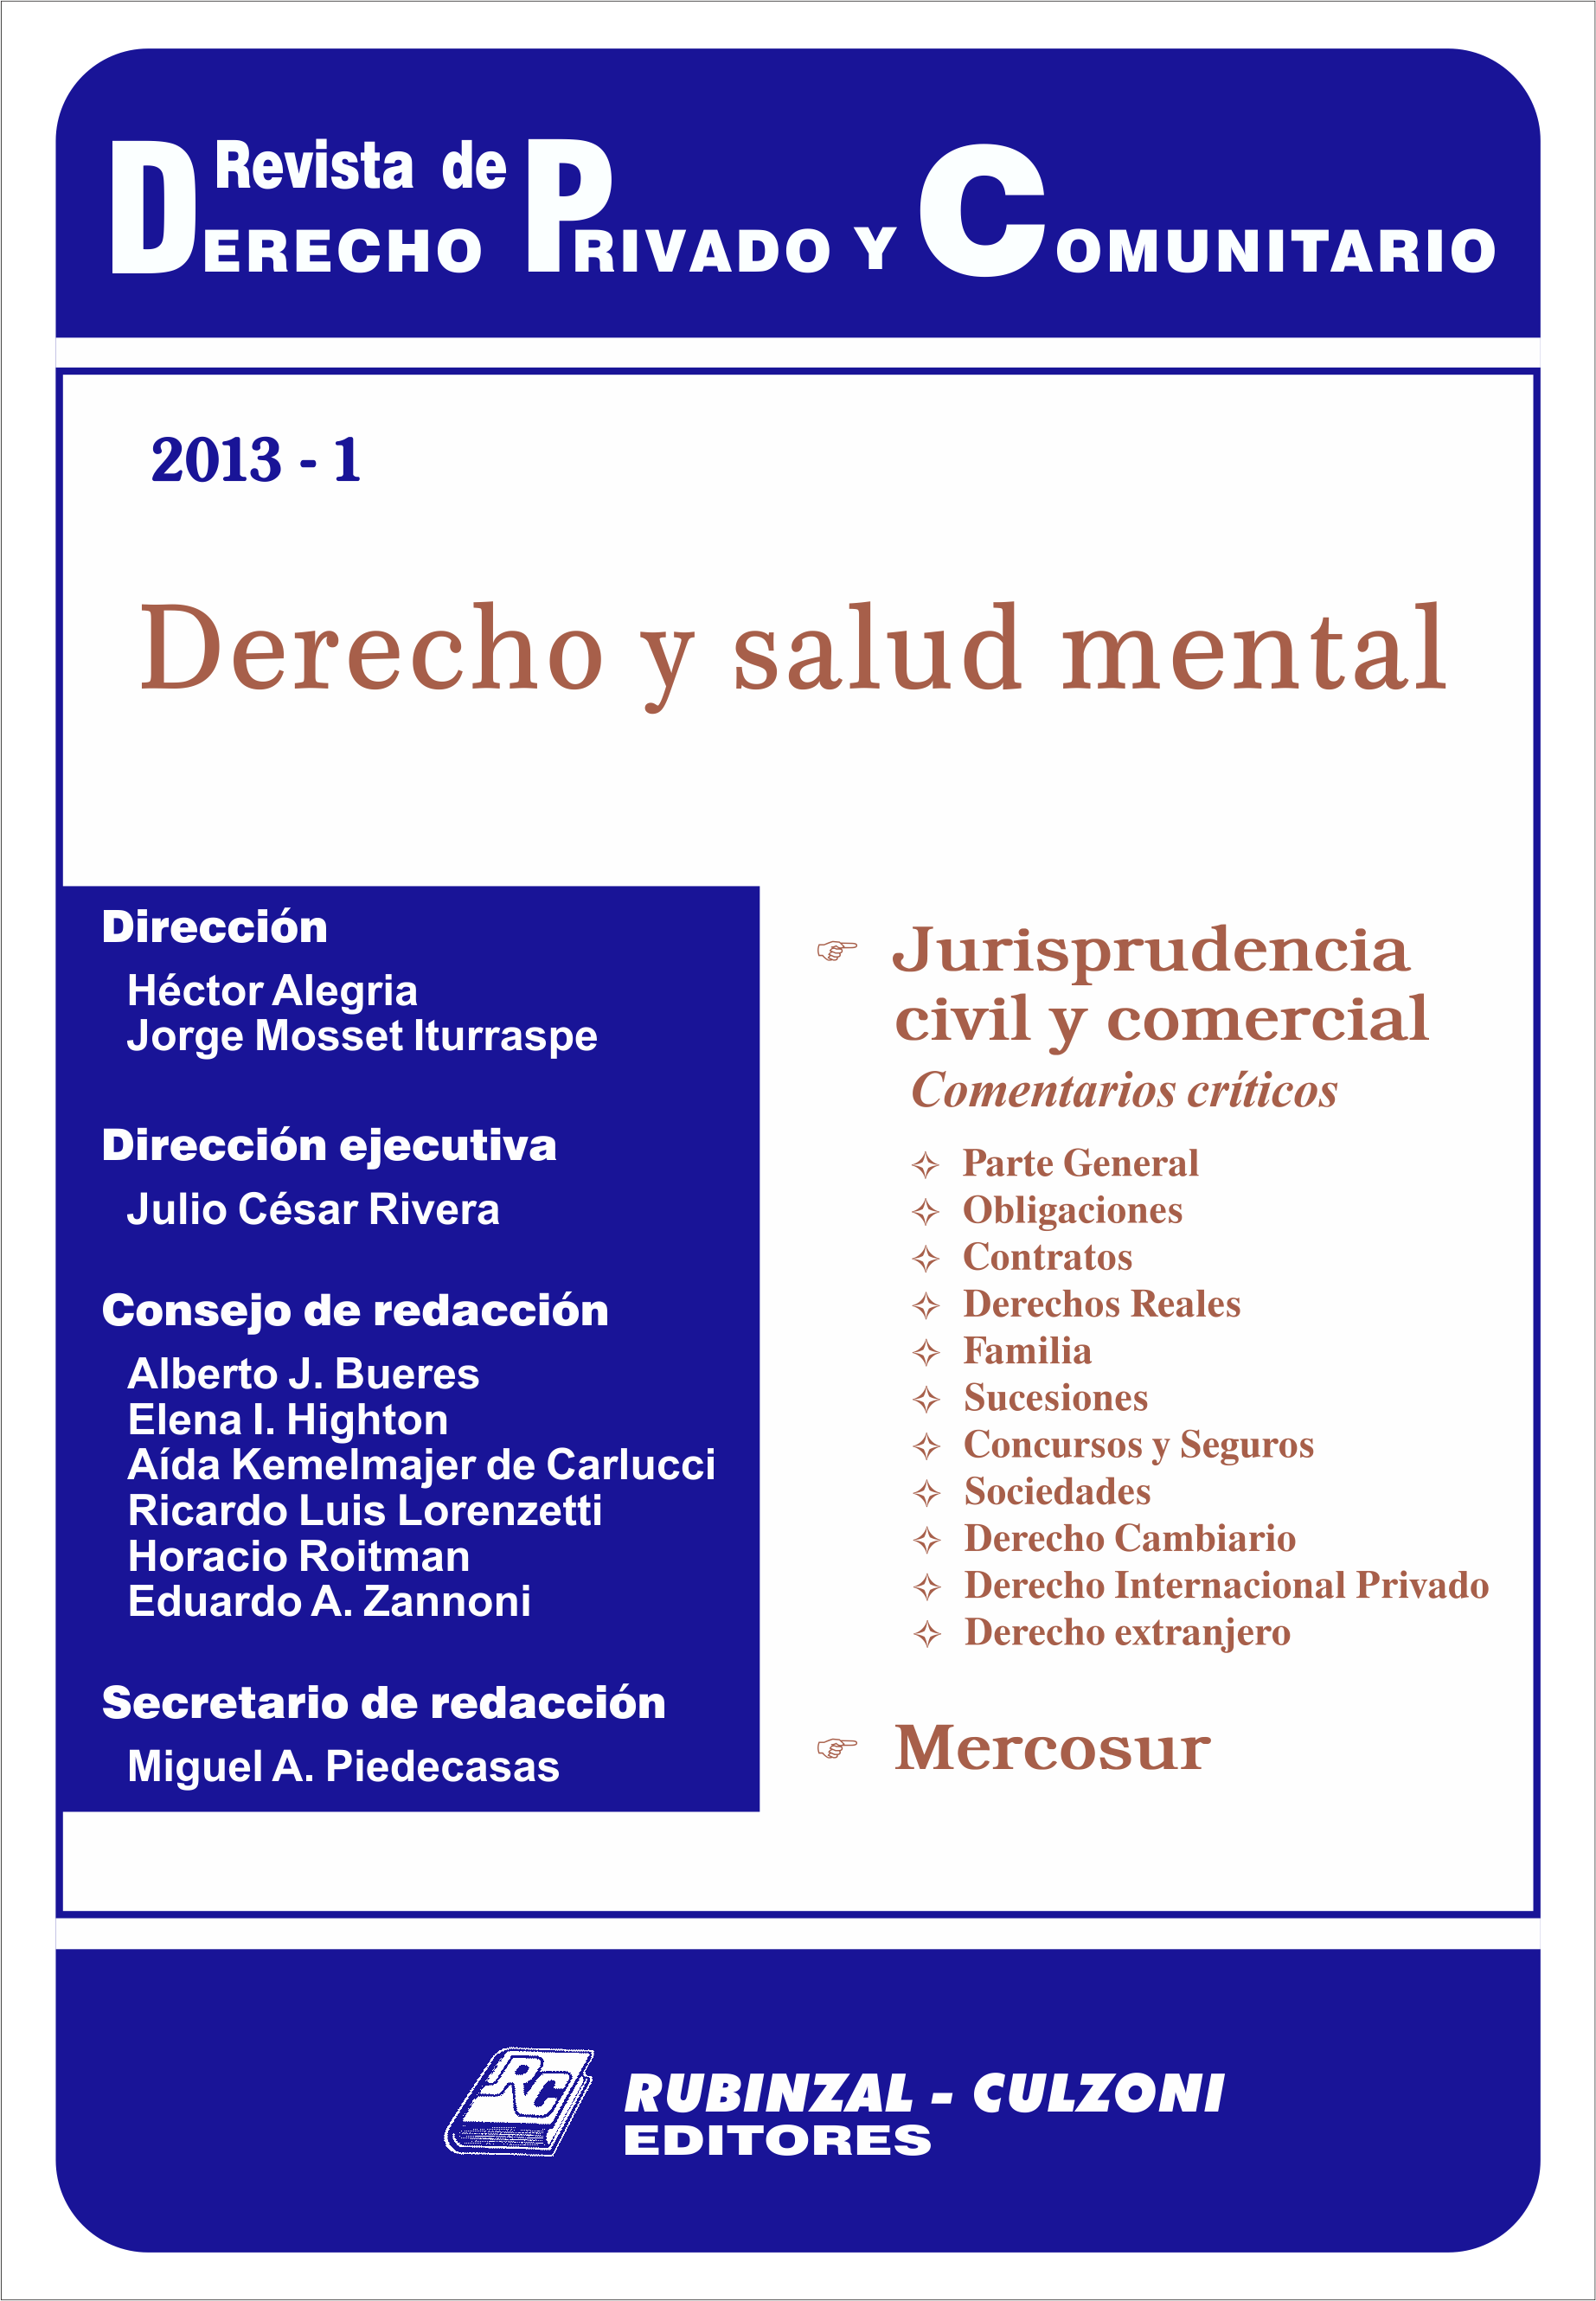 Revista de Derecho Privado y Comunitario - Derecho y salud mental.